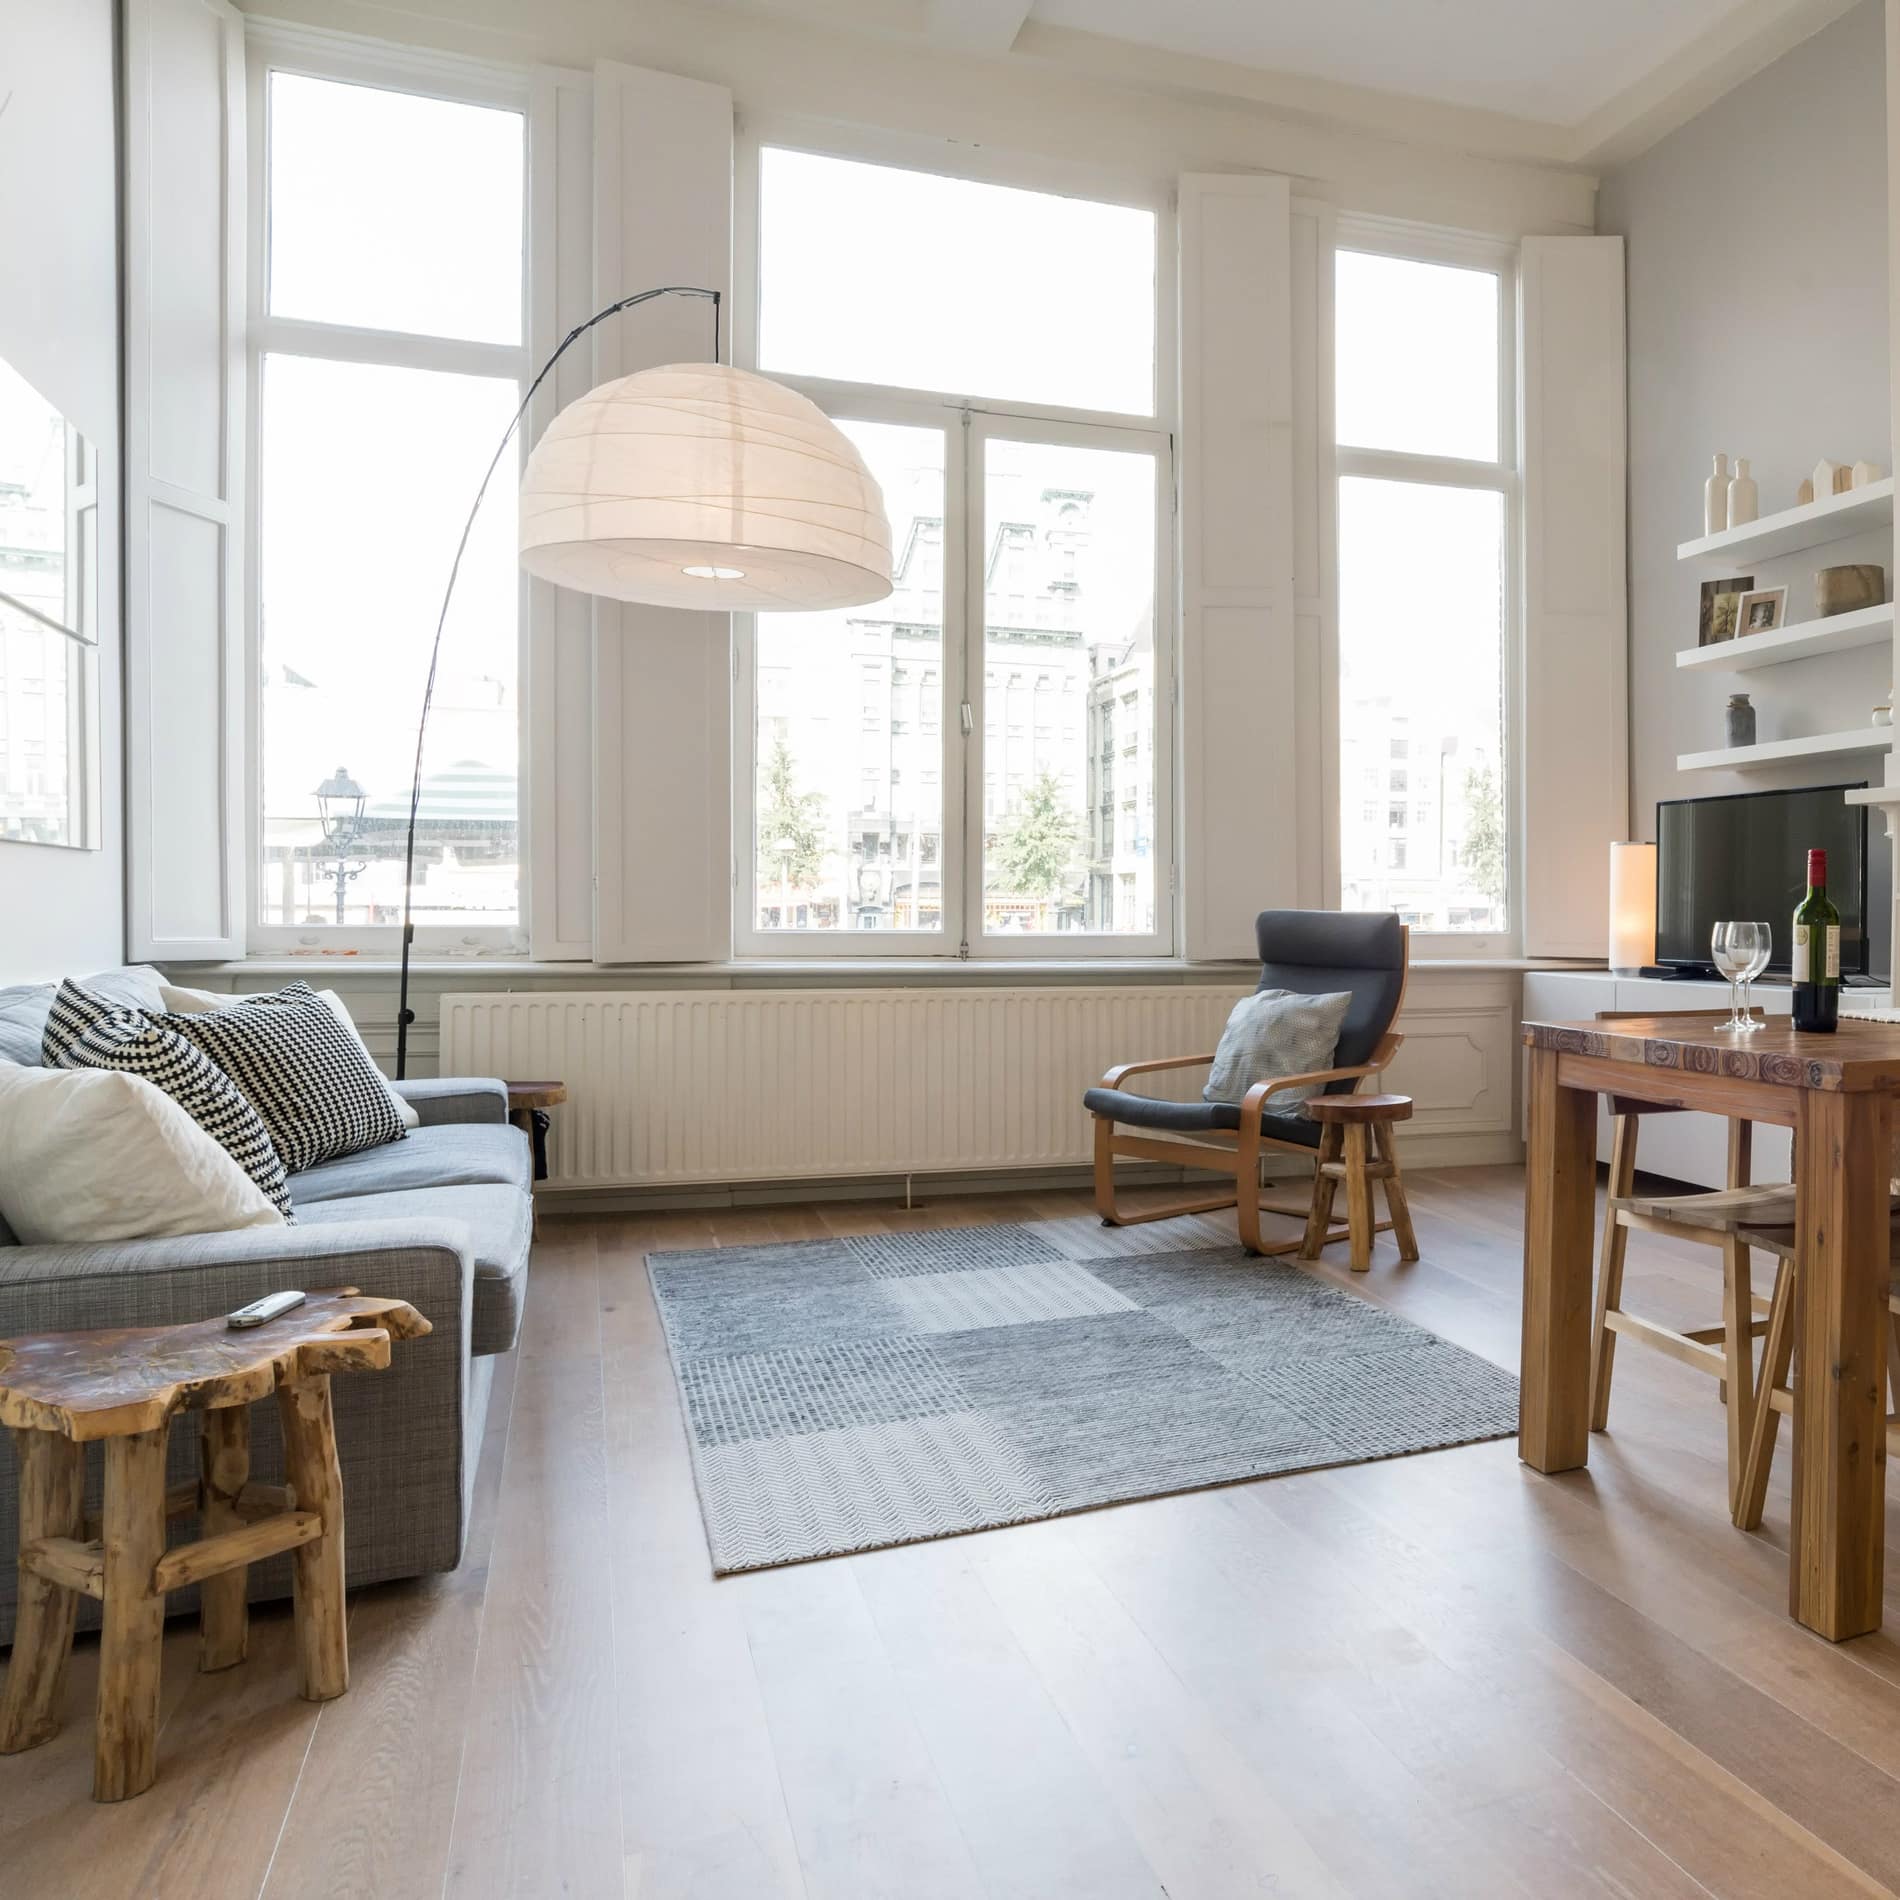 Lichte woonkamer met grote ramen, bank, luie stoel, eettafel en houten vloer